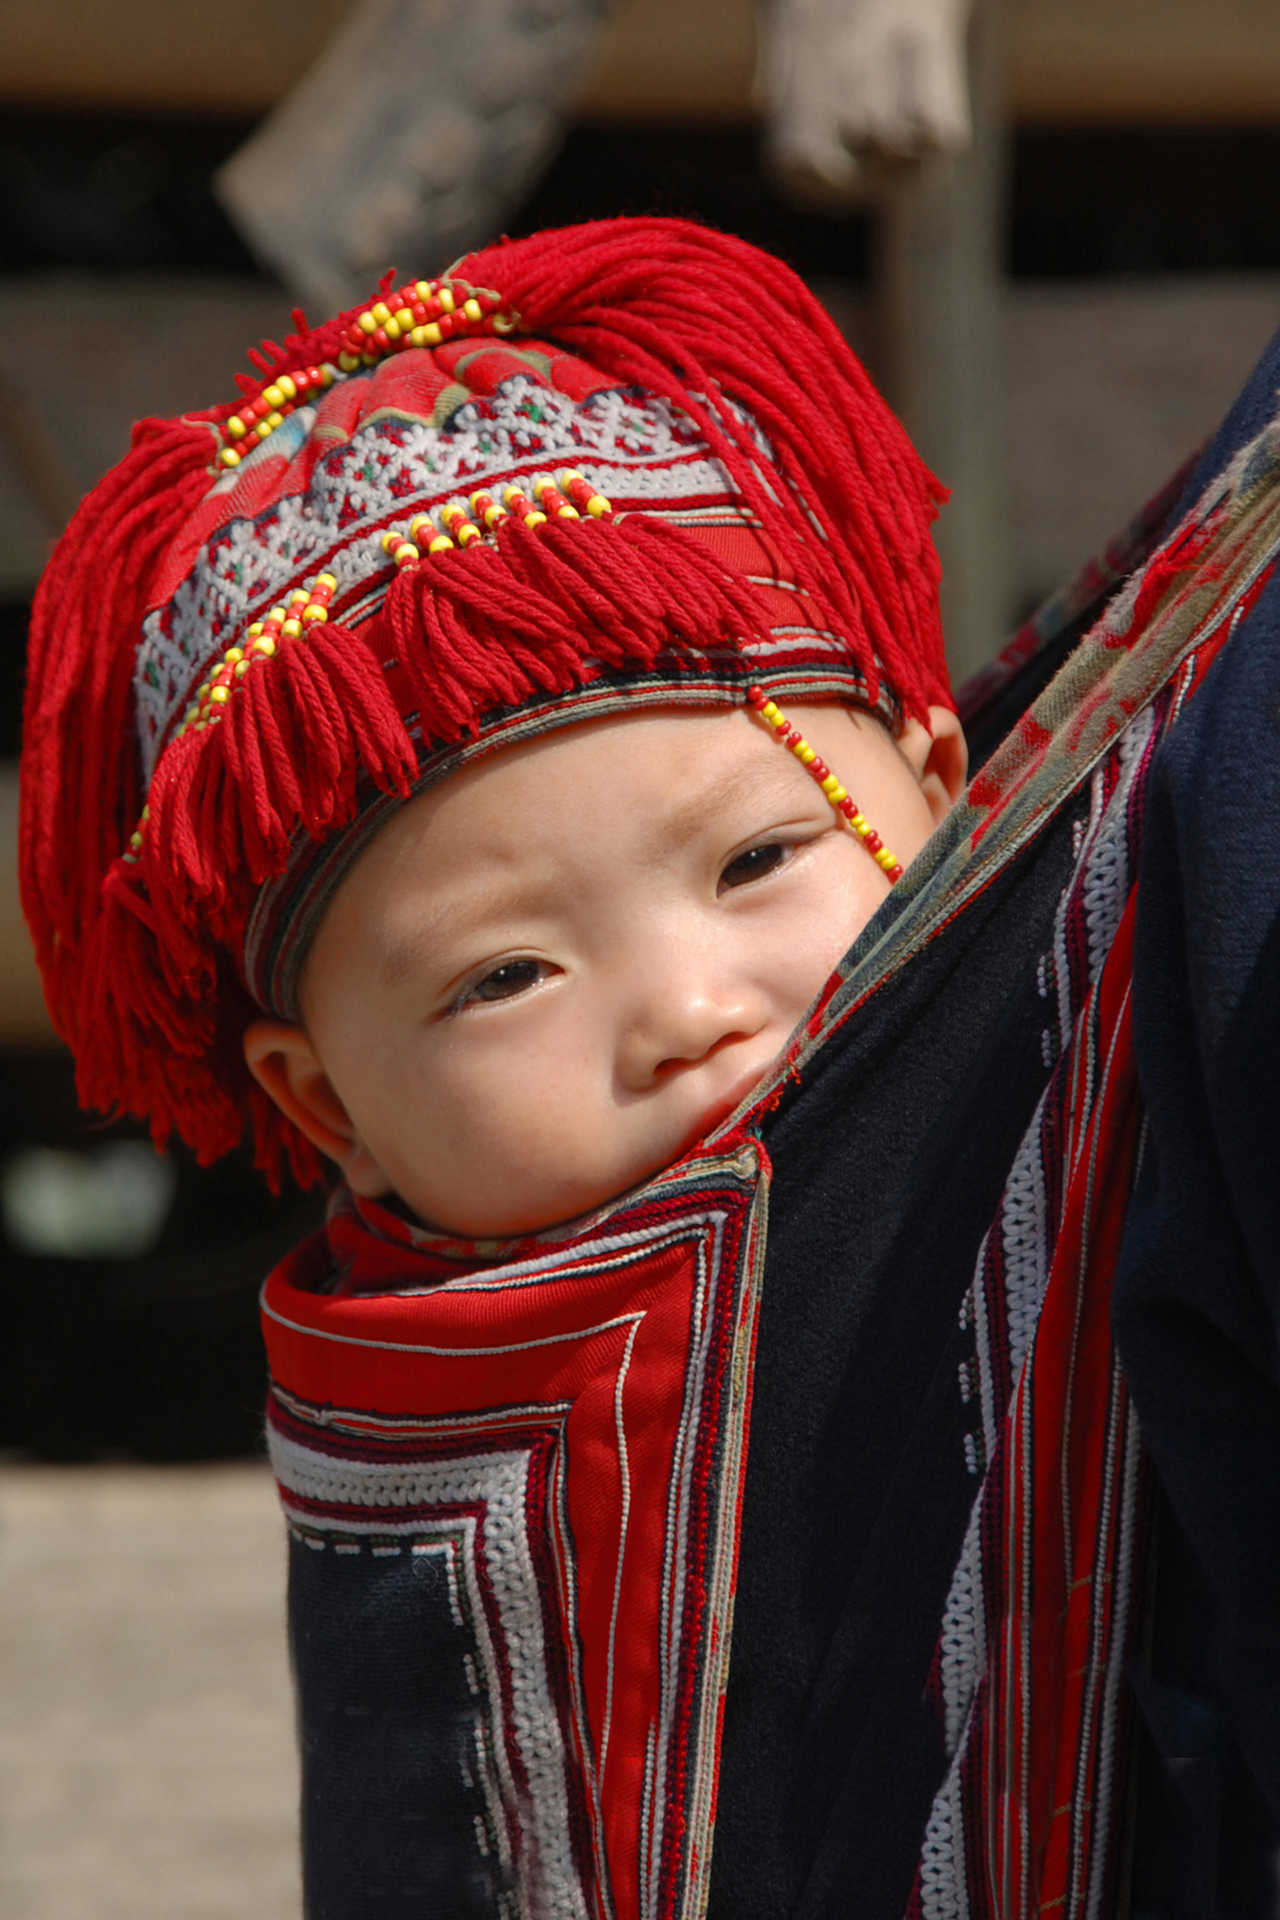 Bébé en habit traditionnel au Vietnam